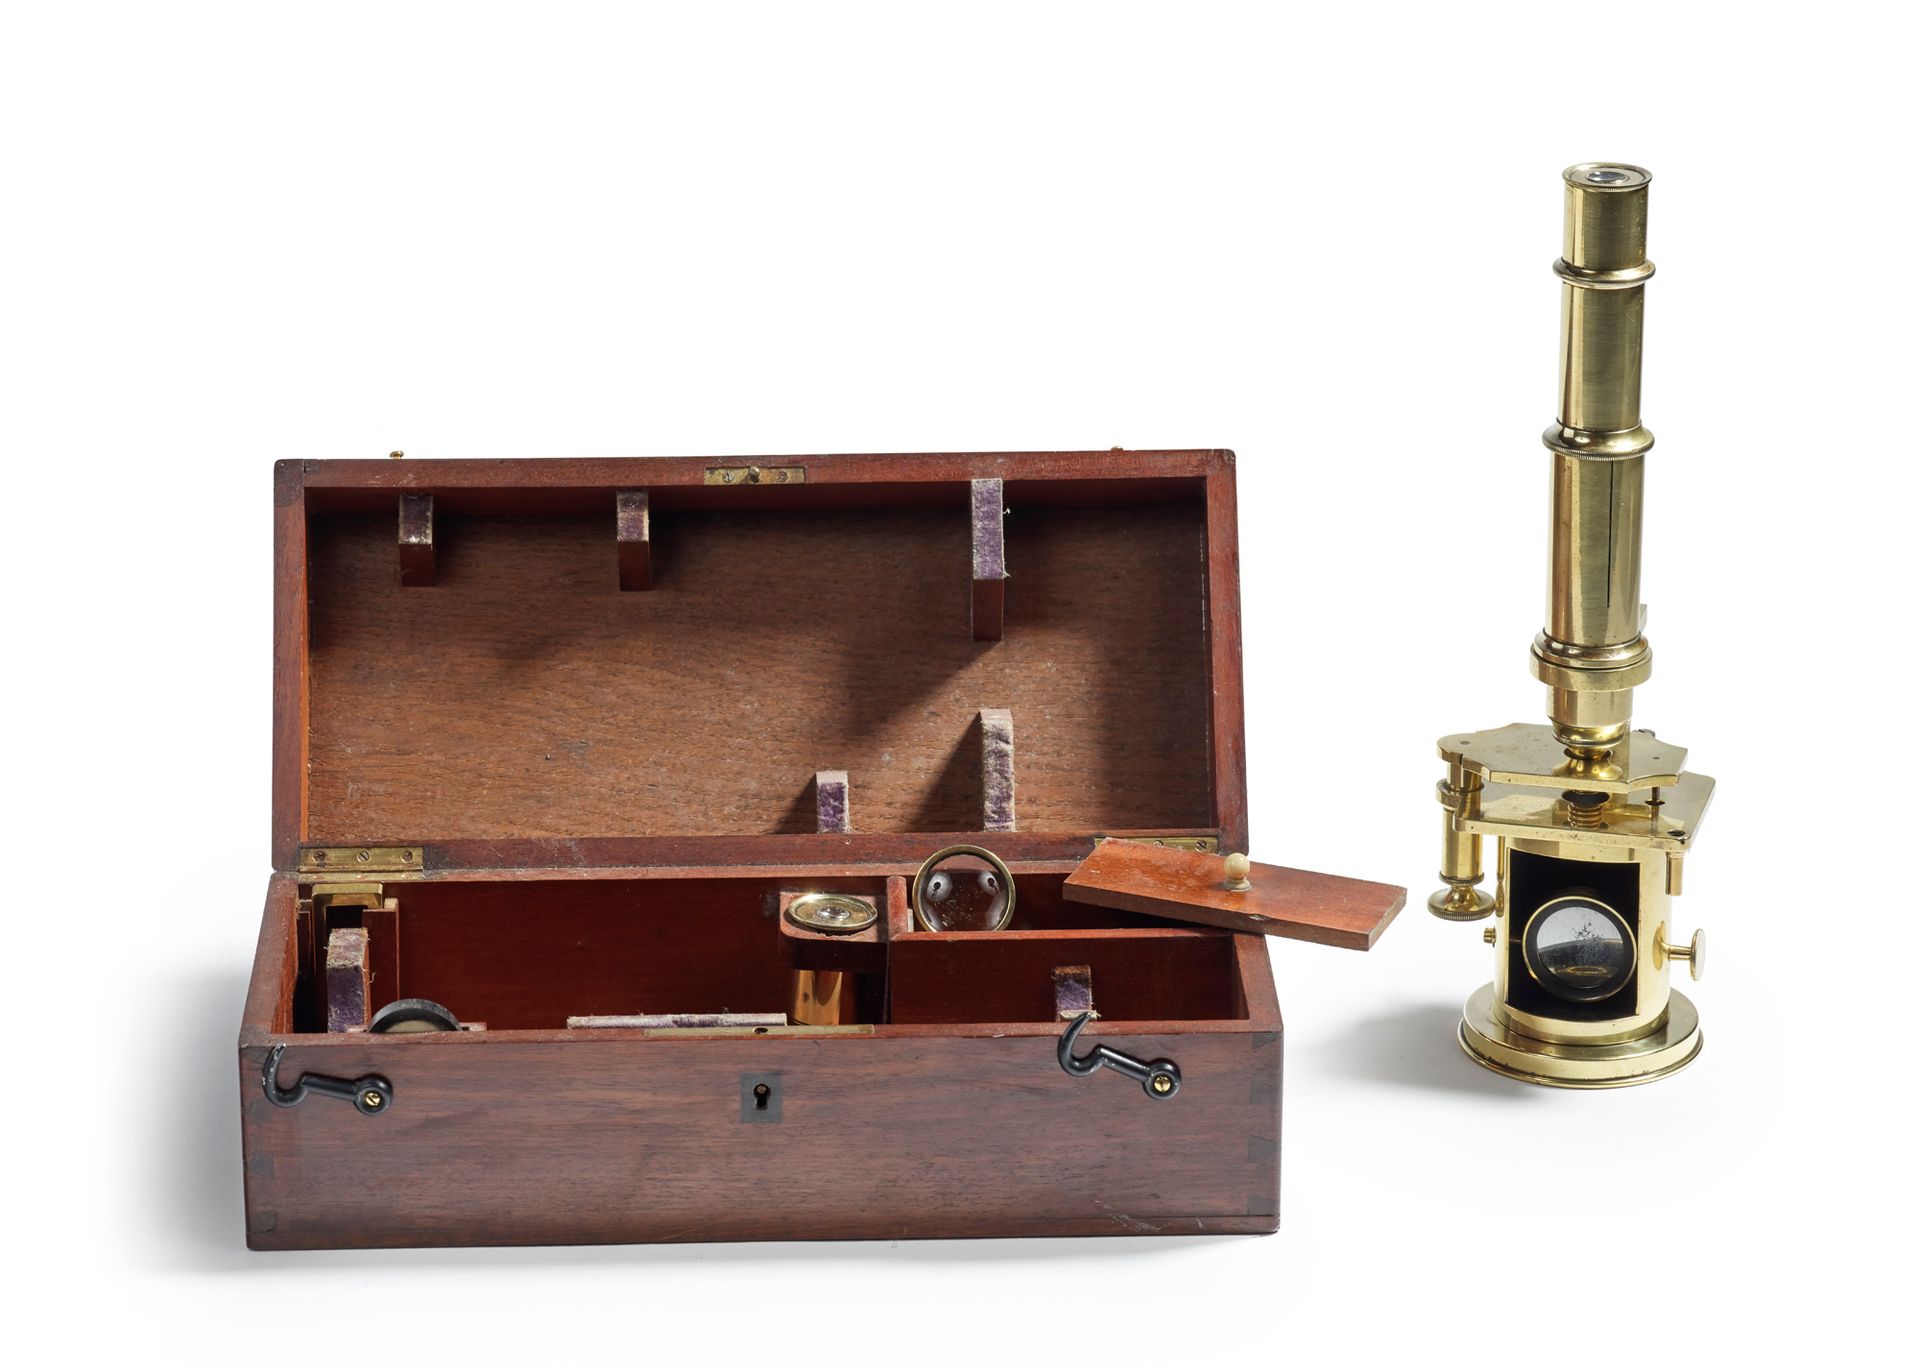 Null 铜鼓显微镜。带有光学元件、制备板和附件的携带箱
法国，20世纪初